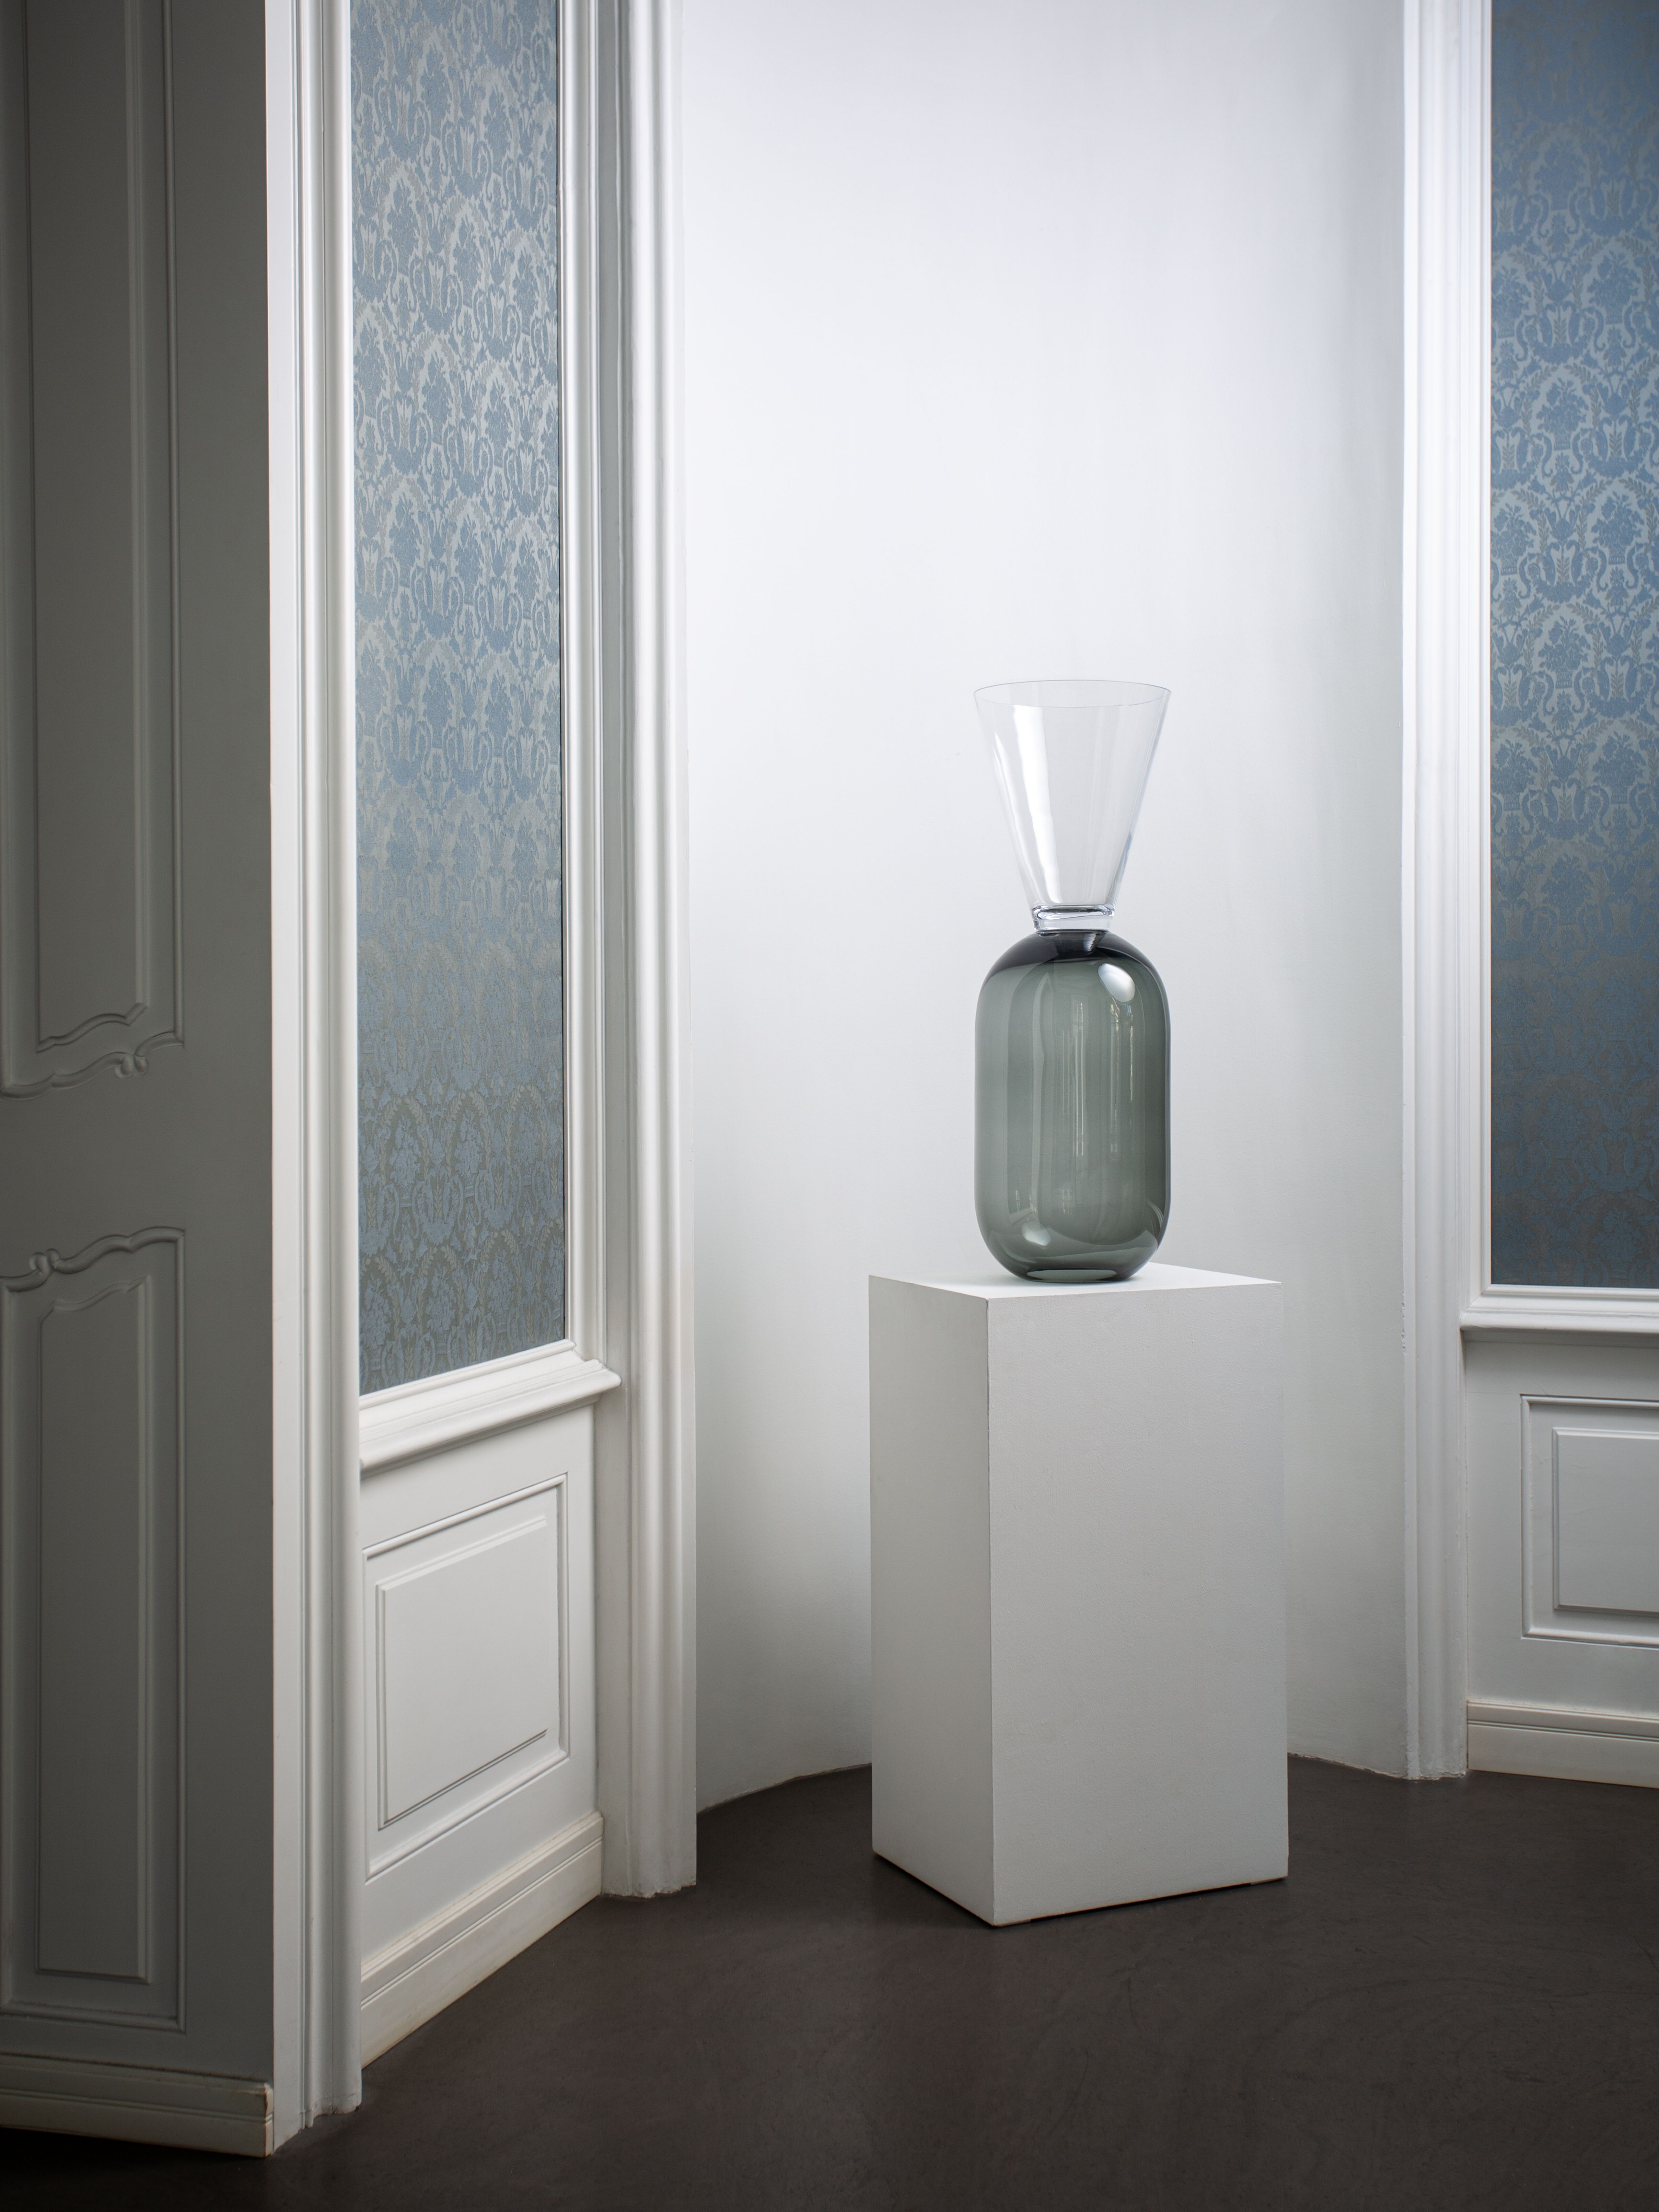 Veľká šedo číra váza zo skla na podstavci zakomponovaná do bieleho výklenku v interiéri. 